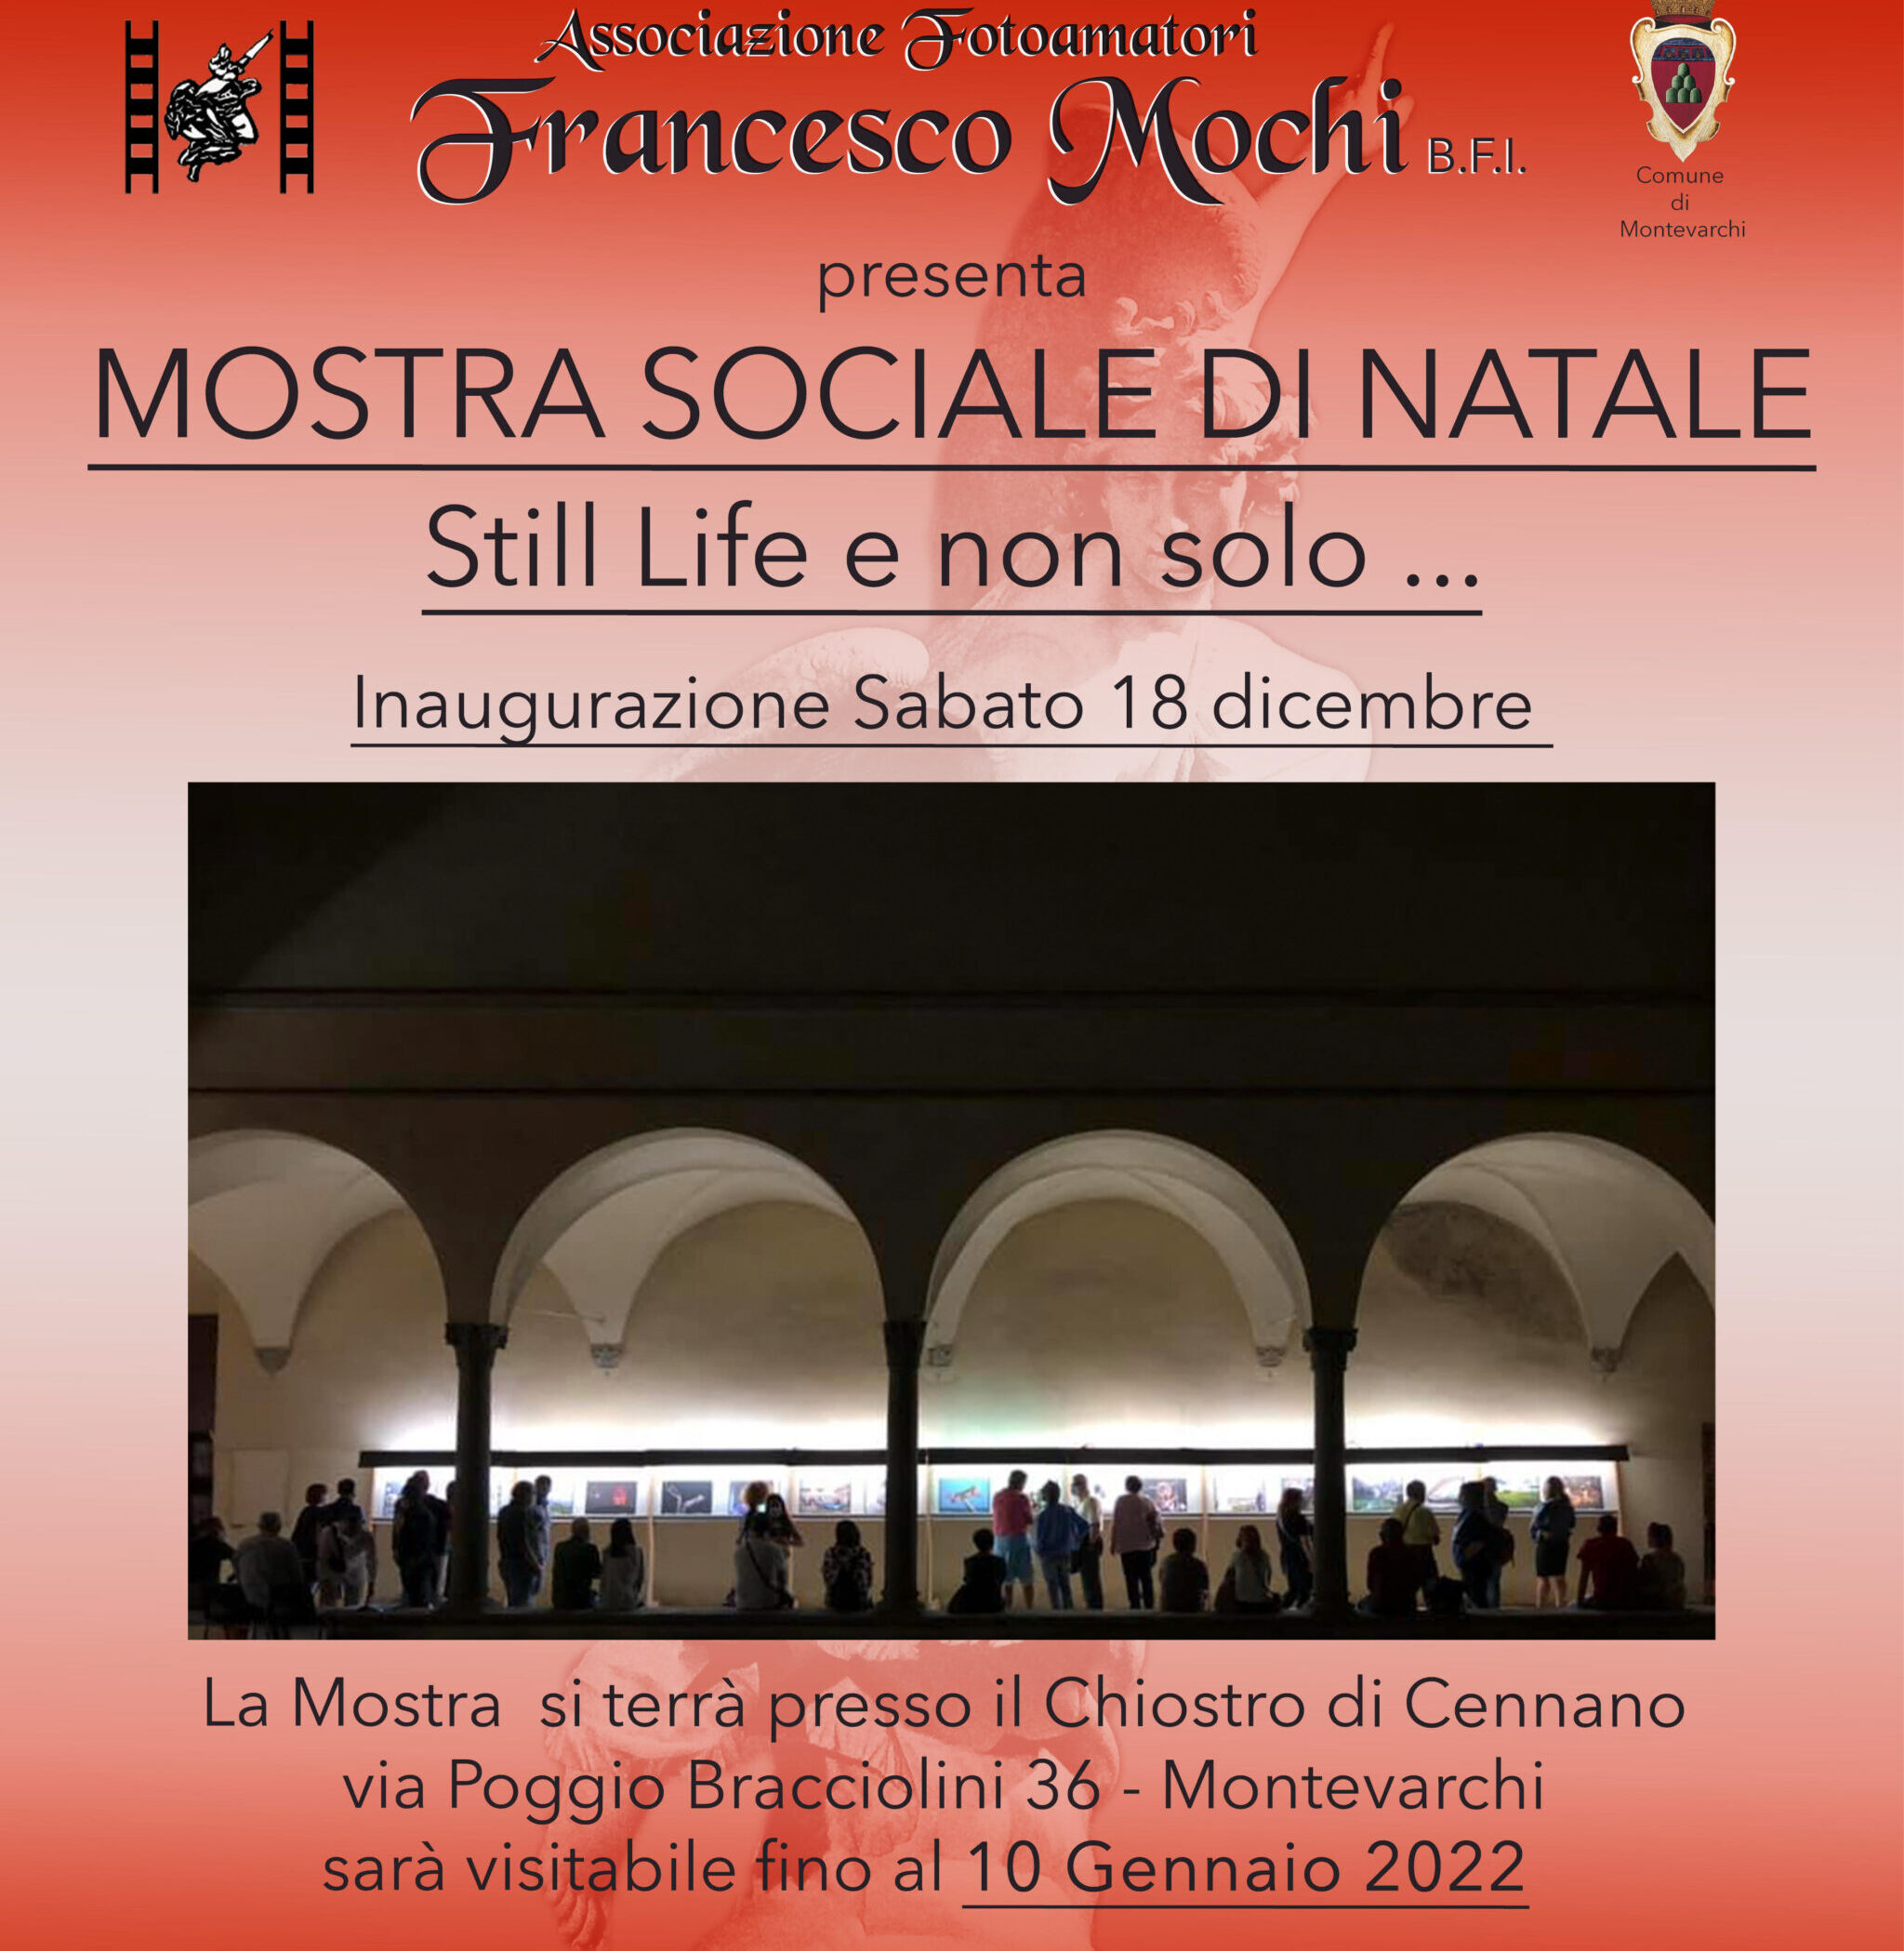 Montevarchi: sabato 18 dicembre l’inaugurazione della mostra dell’Associazione Fotoamatori “Francesco Mochi”